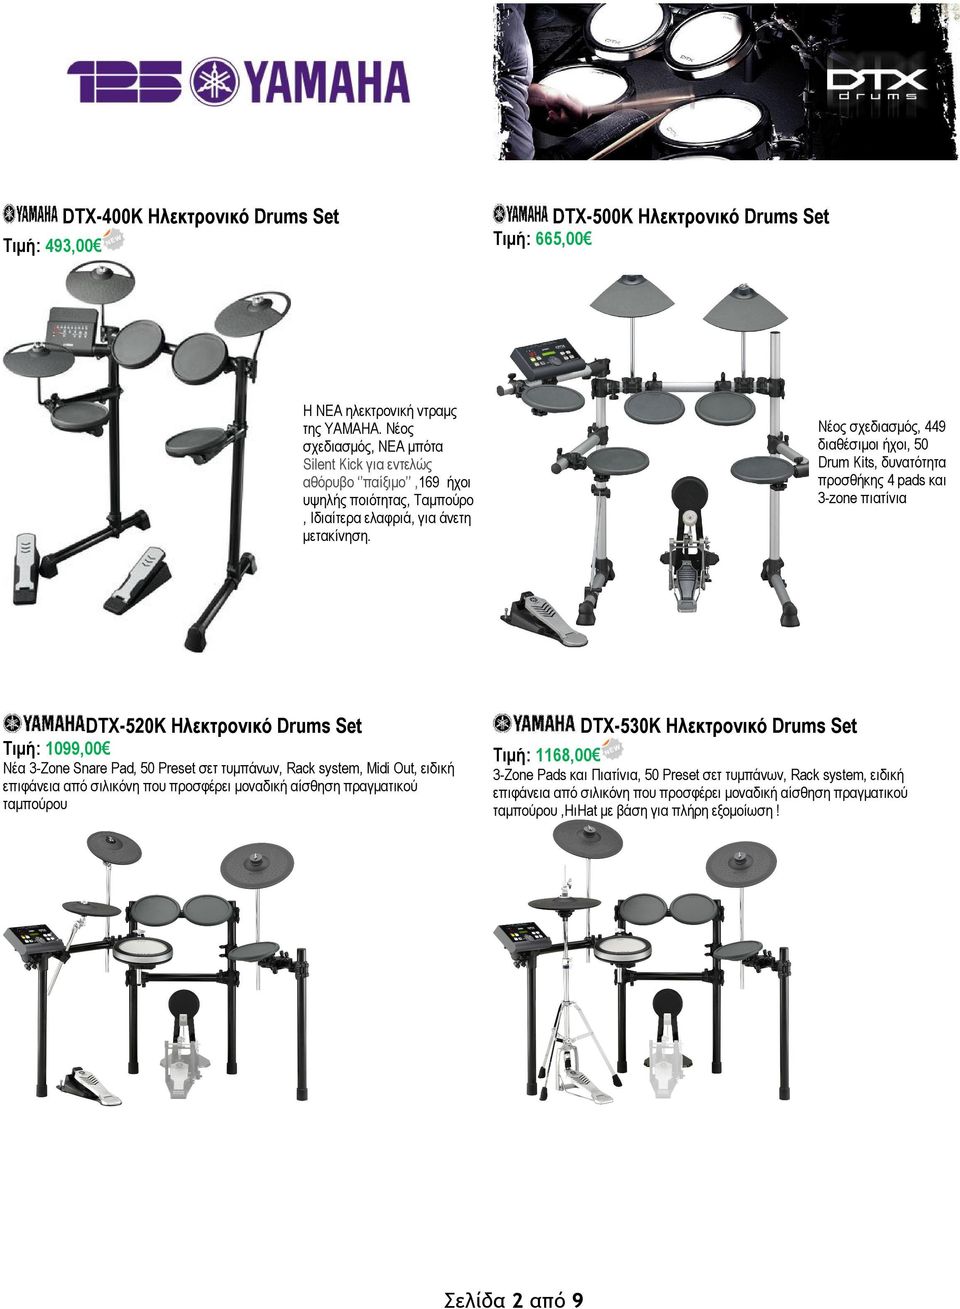 Νέος σχεδιασμός, 449 διαθέσιμοι ήχοι, 50 Drum Kits, δυνατότητα προσθήκης 4 pads και 3-zone πιατίνια DTX-520K Ηλεκτρονικό Drums Set Τιμή: 1099,00 Νέα 3-Zone Snare Pad, 50 Preset σετ τυμπάνων, Rack